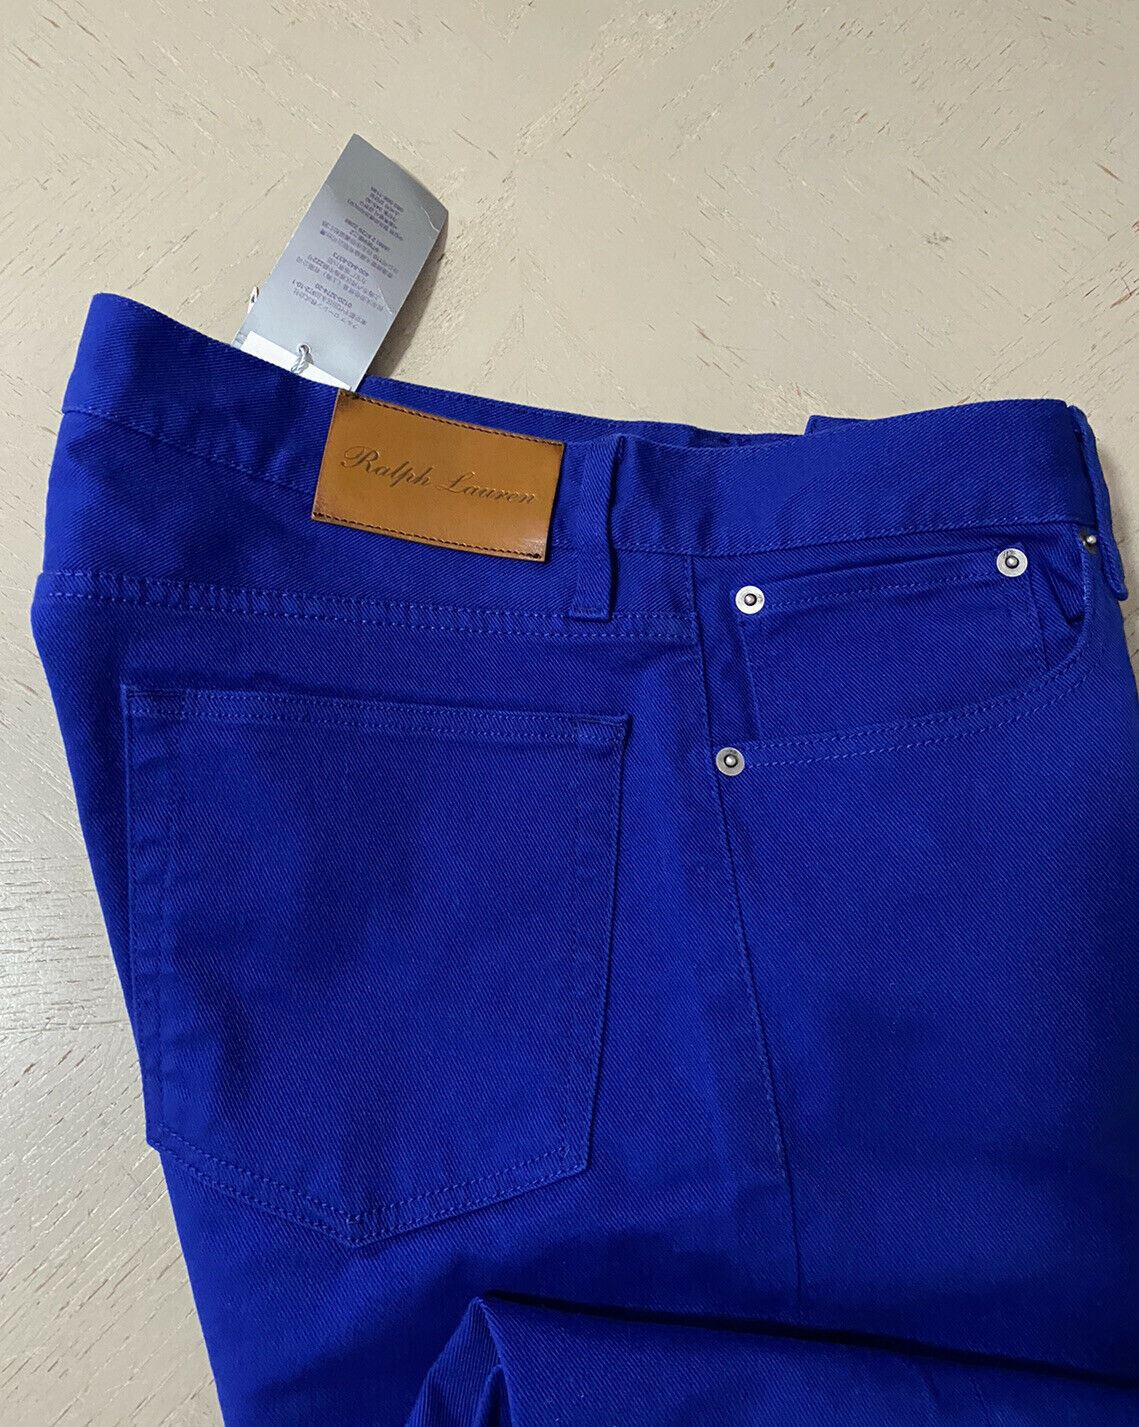 Neu mit Etikett: 495 $ Ralph Lauren Purple Label Herren Thompson Slim Jeans Hose Blau 34